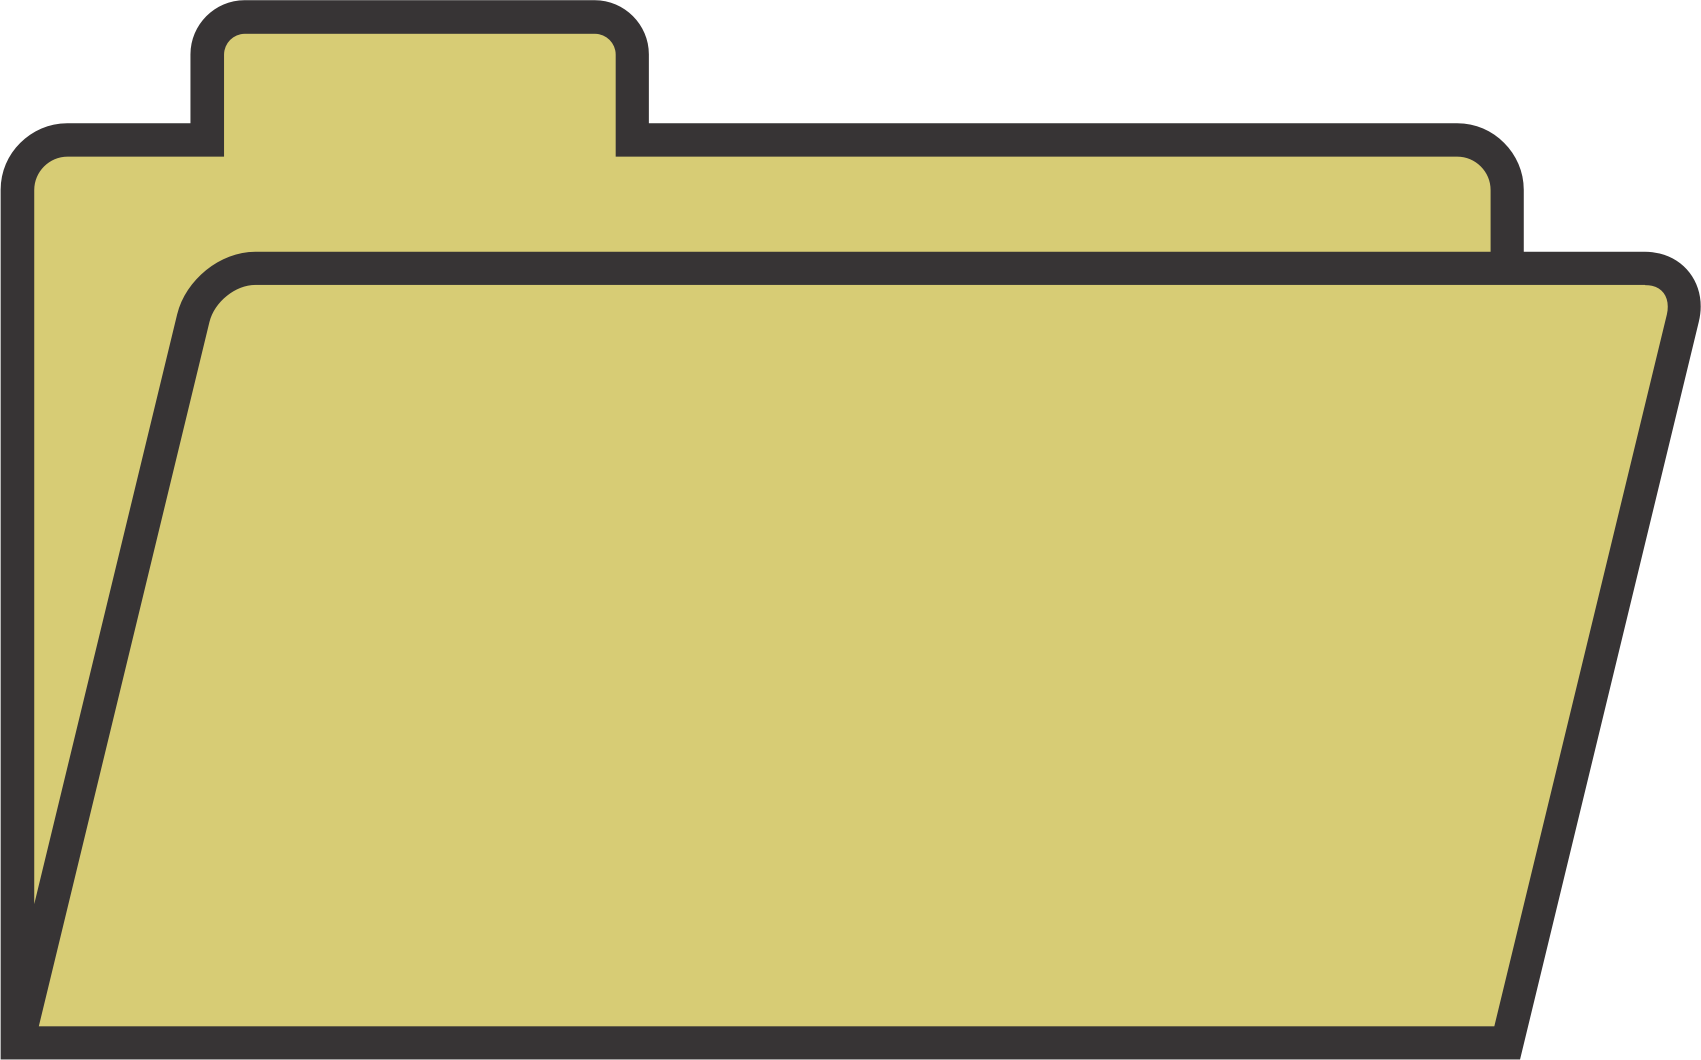 Yellow File Folder